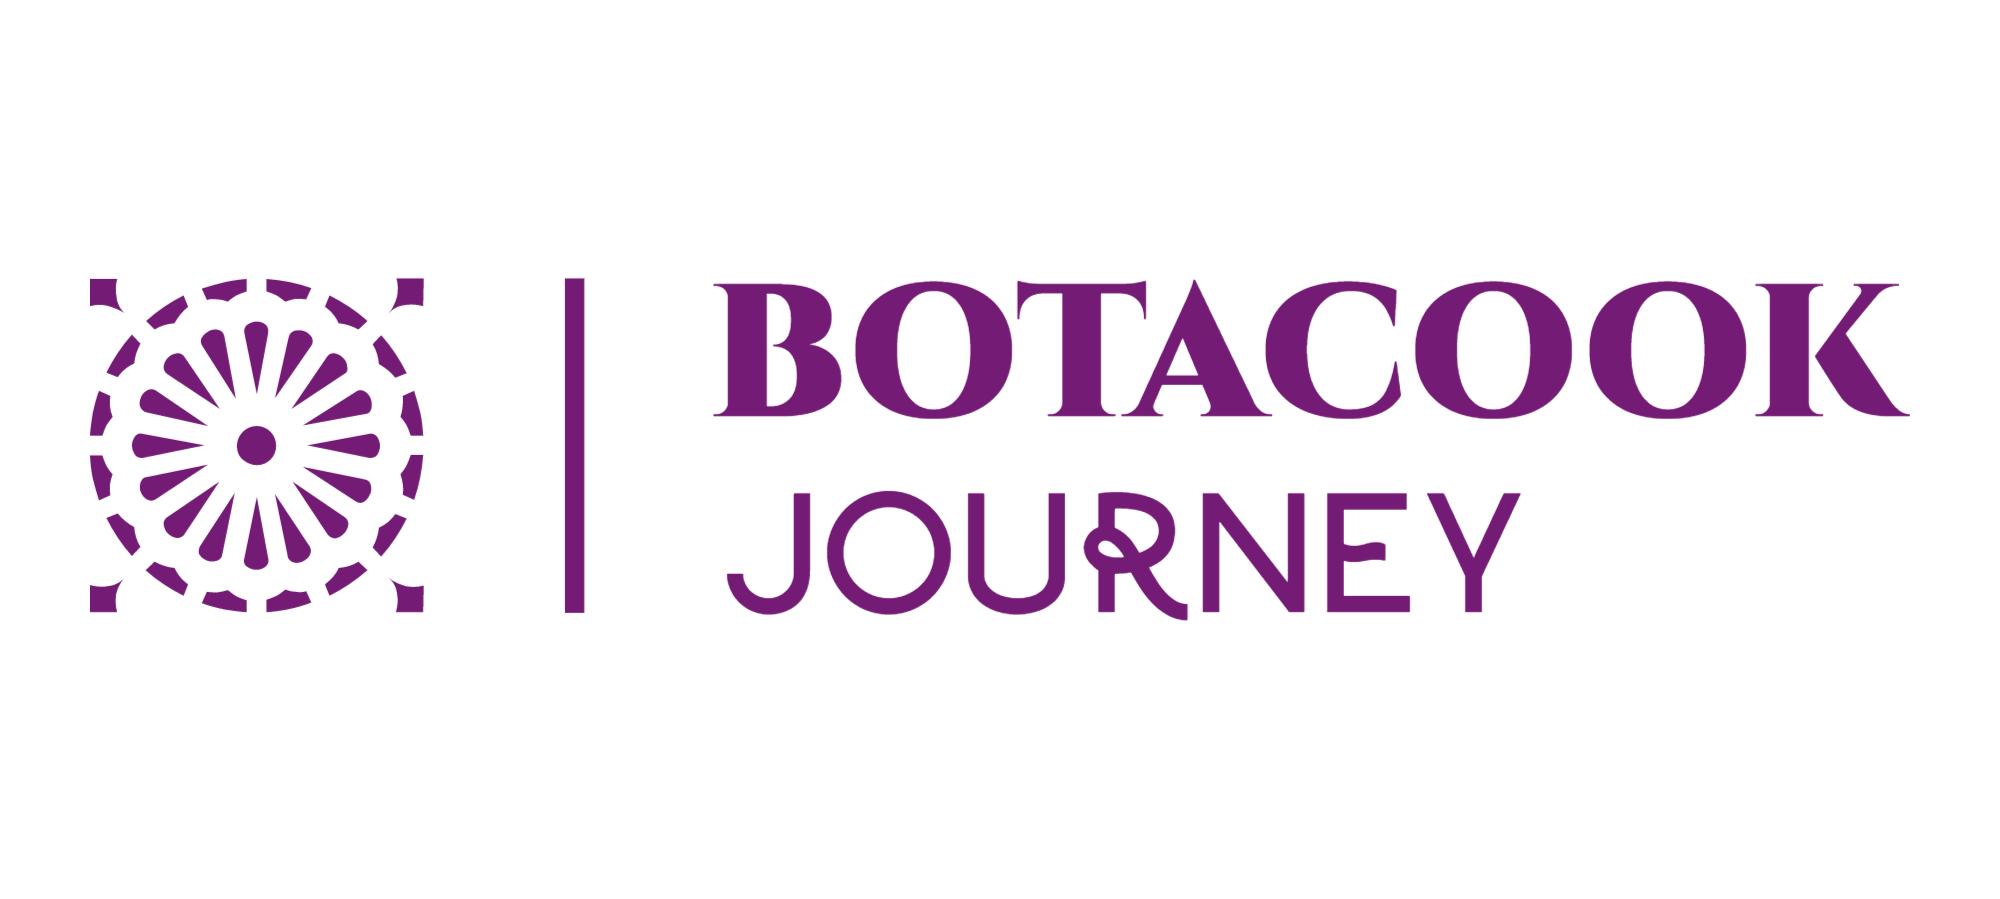 botacook journey